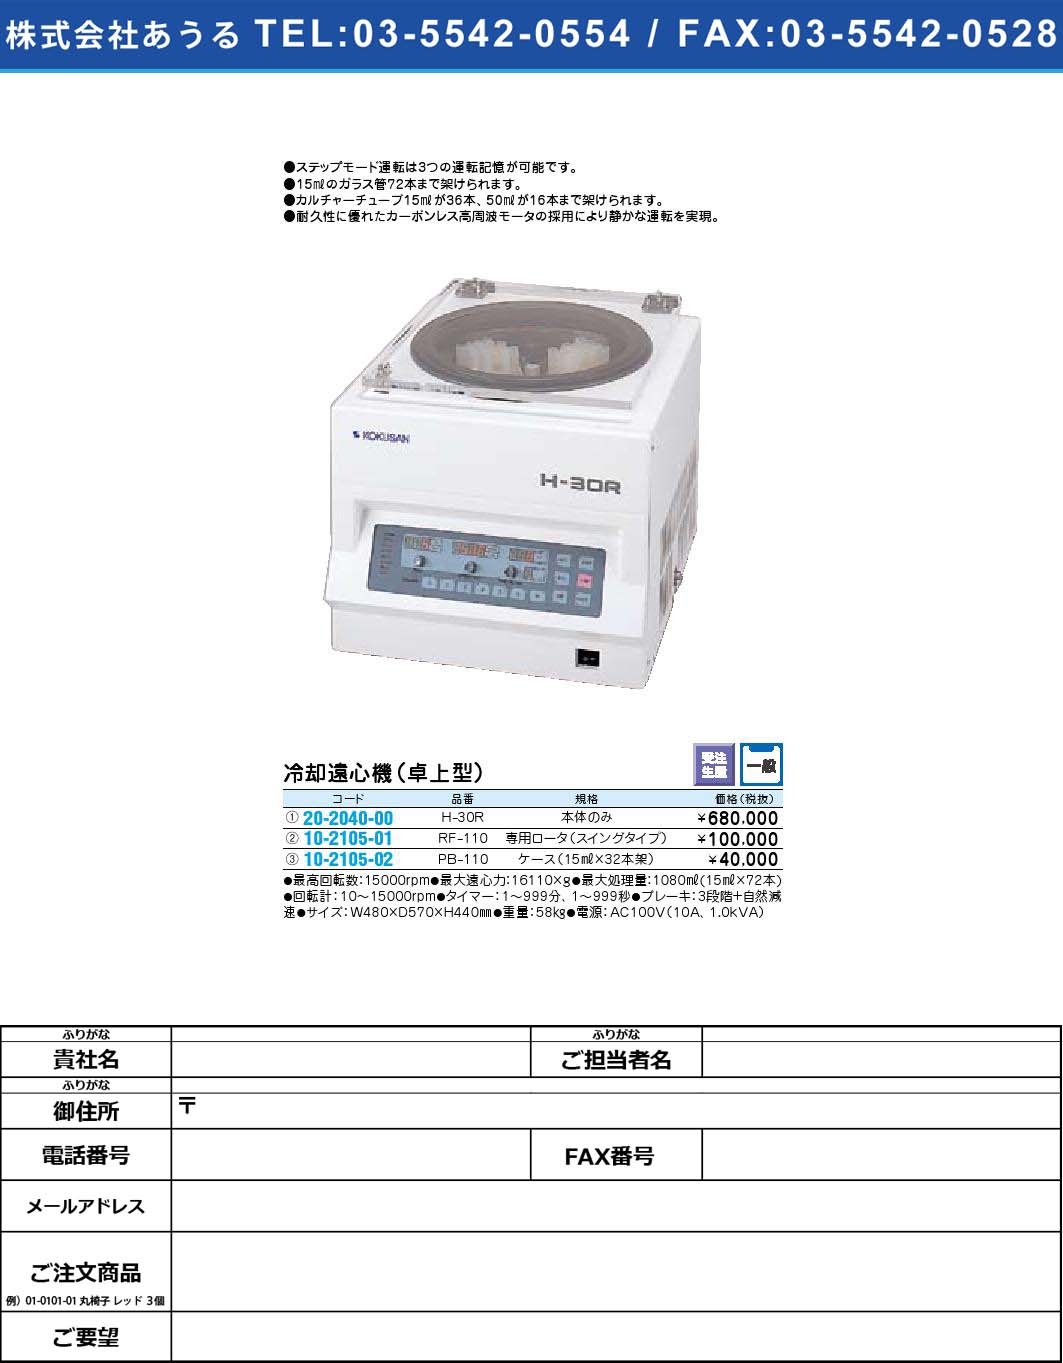 (10-2105-02)冷却遠心機（卓上型） PB-110(10-2105-02)【1個単位】【2009年カタログ商品】